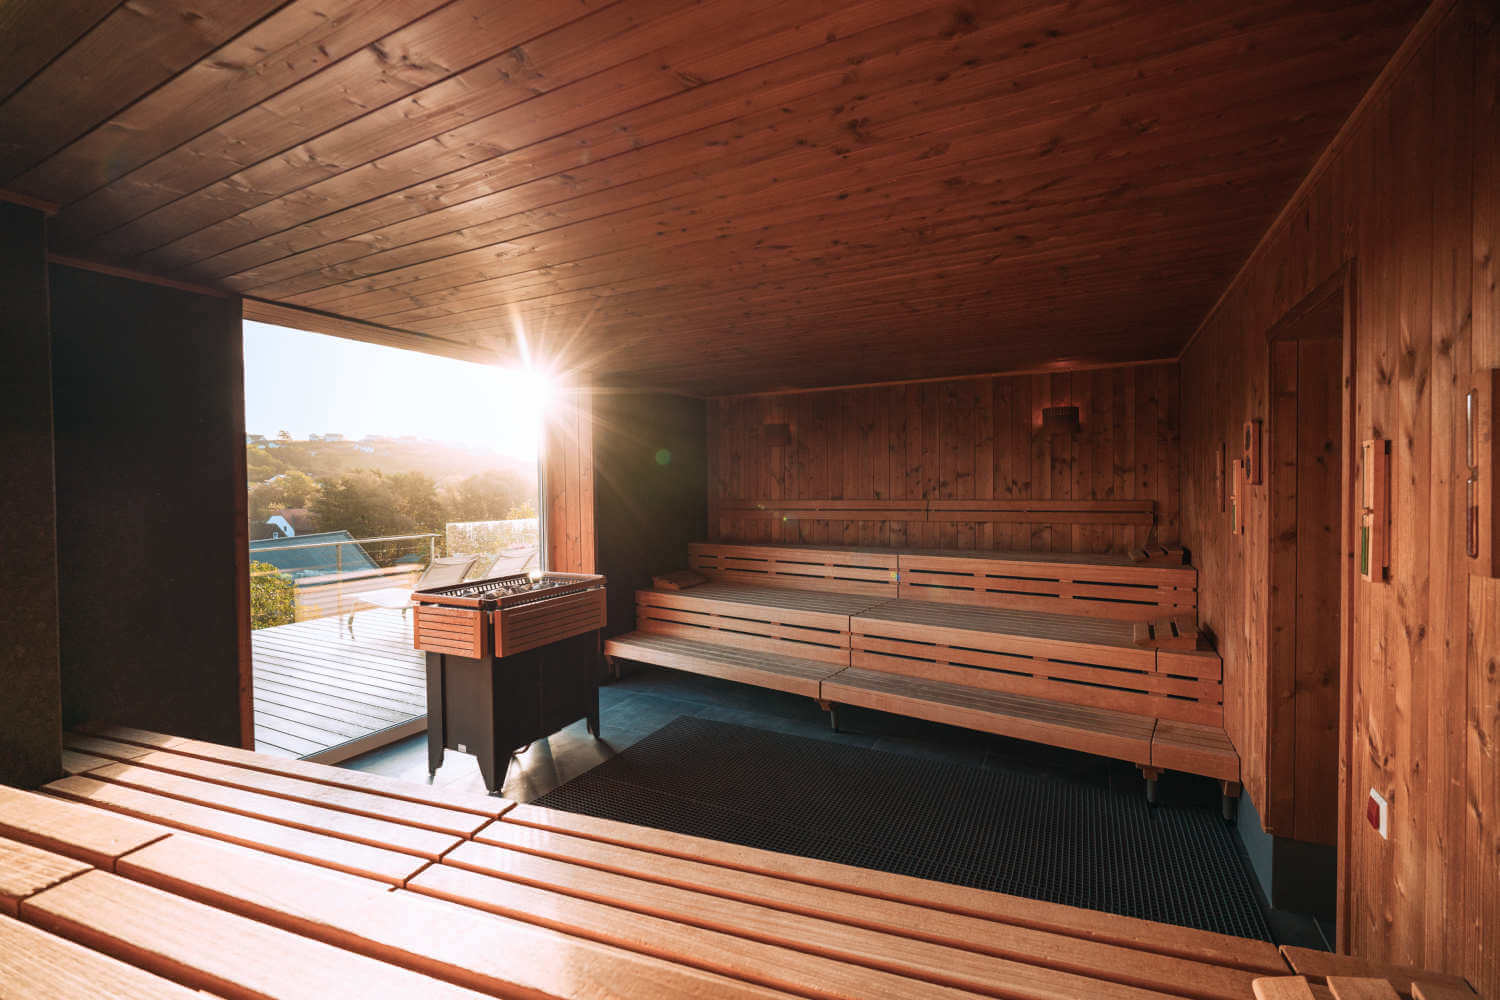 Aufnahme der Finnische Sauna mit Blick nach draußen durch das große Panoramafenster, durch das die Sonnenstrahlen hineinscheinen